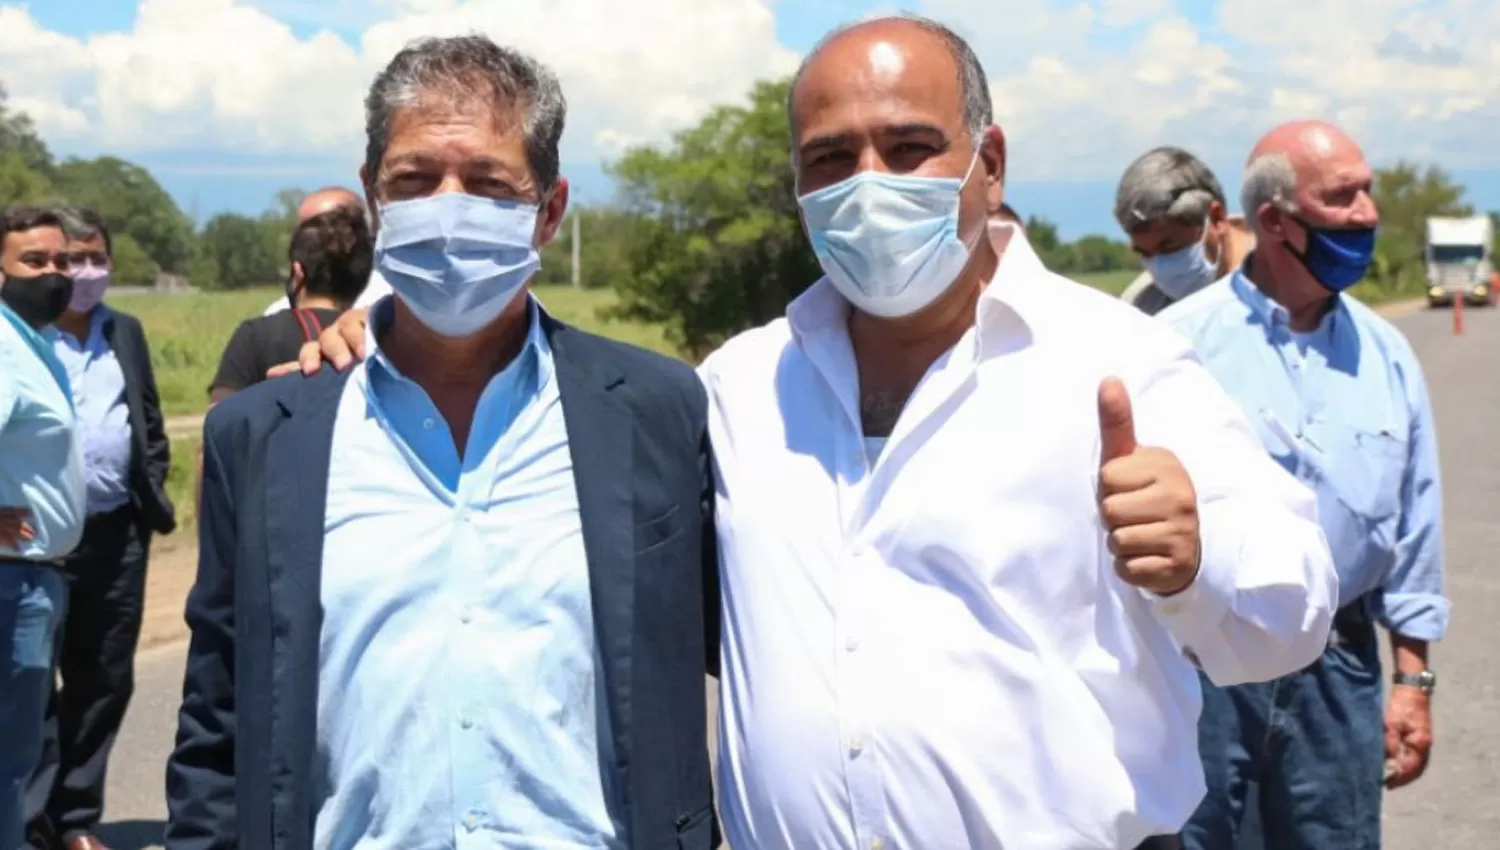 ¿UN MENSAJE? Abboud posó junto al gobernador Juan Manzur durante una visita a la provincia del ministro de Obras Públicas de Nación, Gabriel Katopodis.